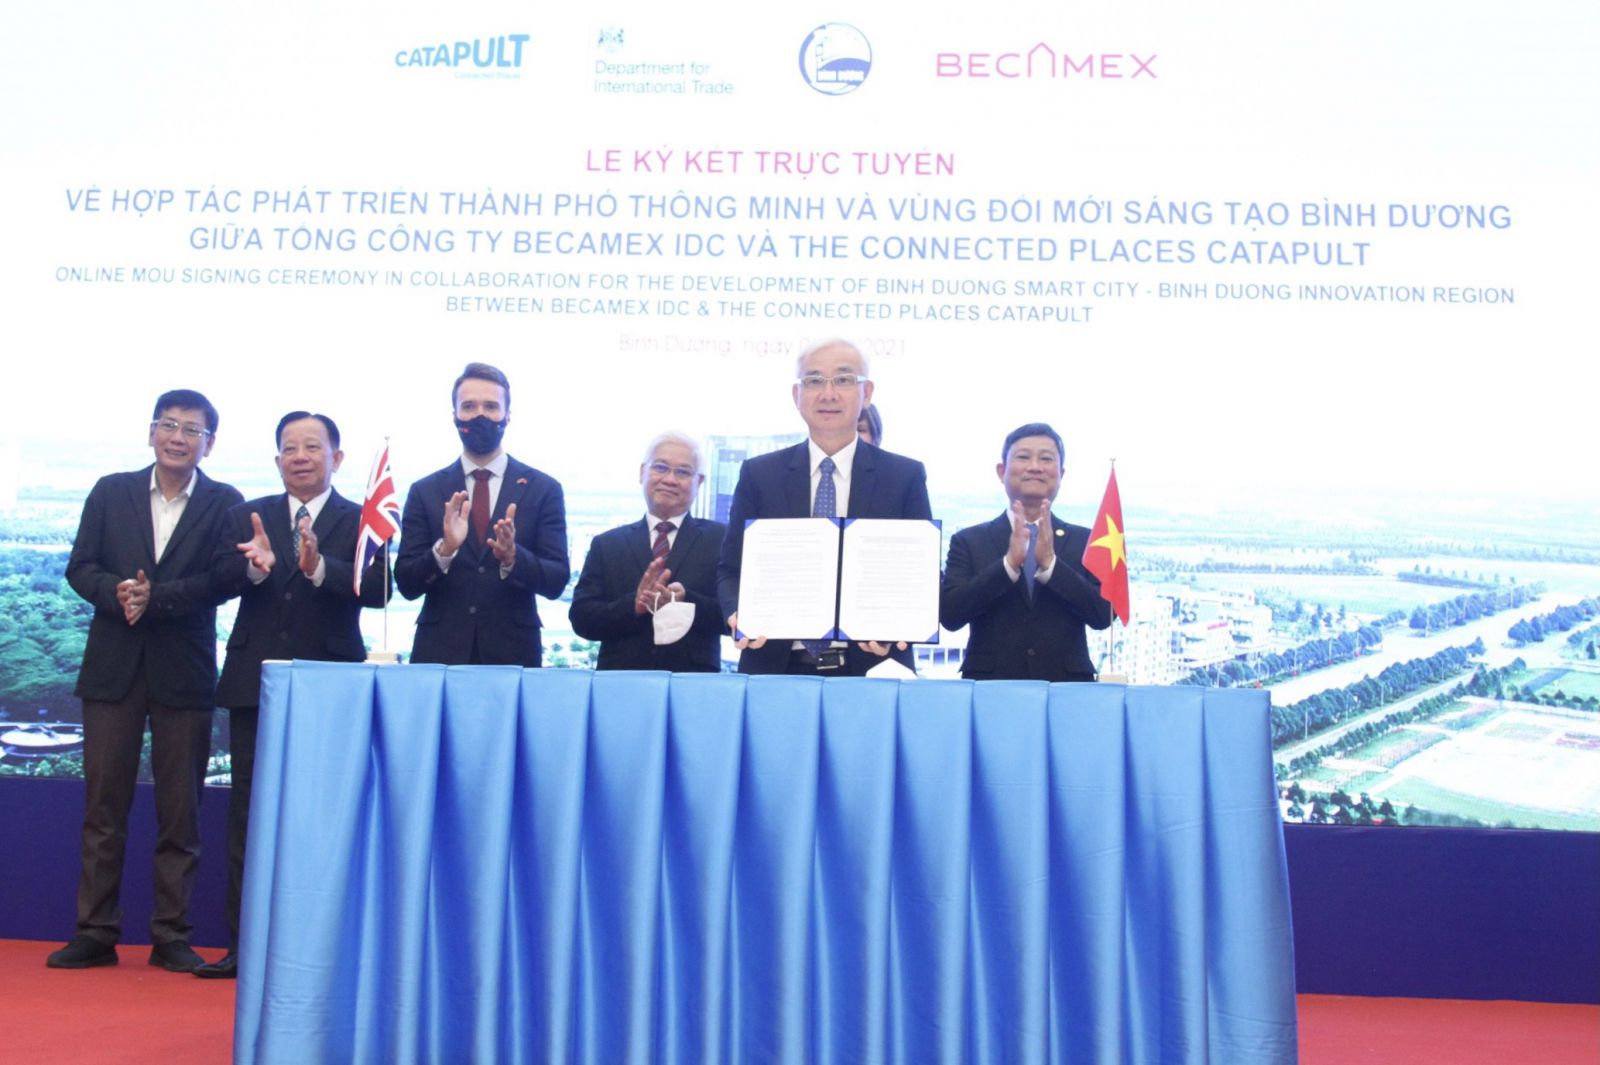 Thực hiện nghi thức ký kết hợp tác trực tuyến giữa Becamex IDC và The Connected Places Catapult tại điểm cầu Bình Dương, Việt Nam.